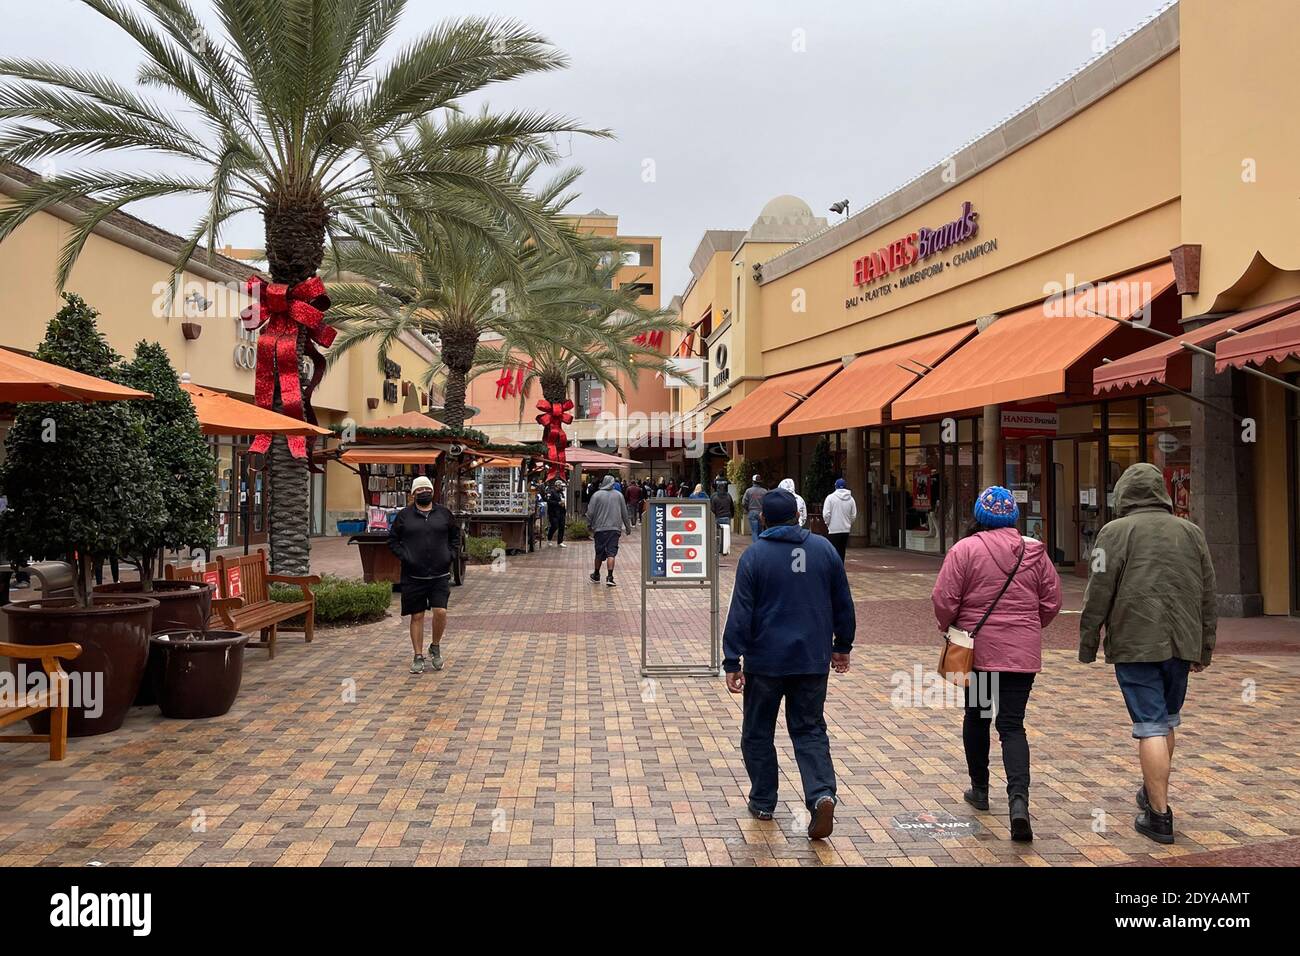 Les gens magasinent la veille de Noël à Citadel Outles dans le cadre de la pandémie mondiale de coronavirus COVID-19, le jeudi 24 décembre 2020, à Los Angeles. (KI Banque D'Images